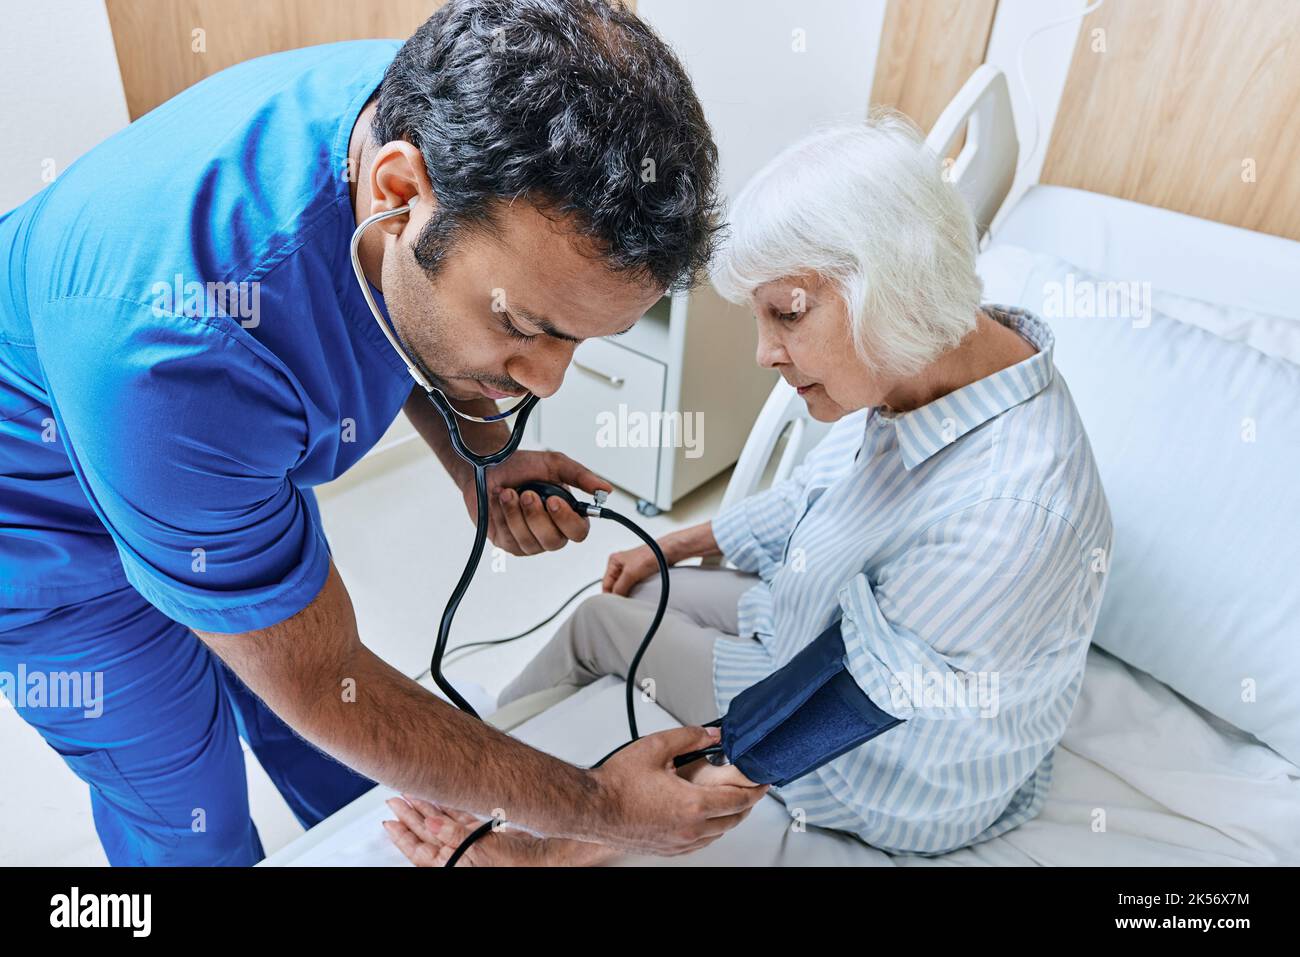 médecin avec stéthoscope mesure la pression de la patiente âgée en utilisant le tonomètre dans la salle de l'hôpital. Prévention et traitement de l'hypertension artérielle Banque D'Images